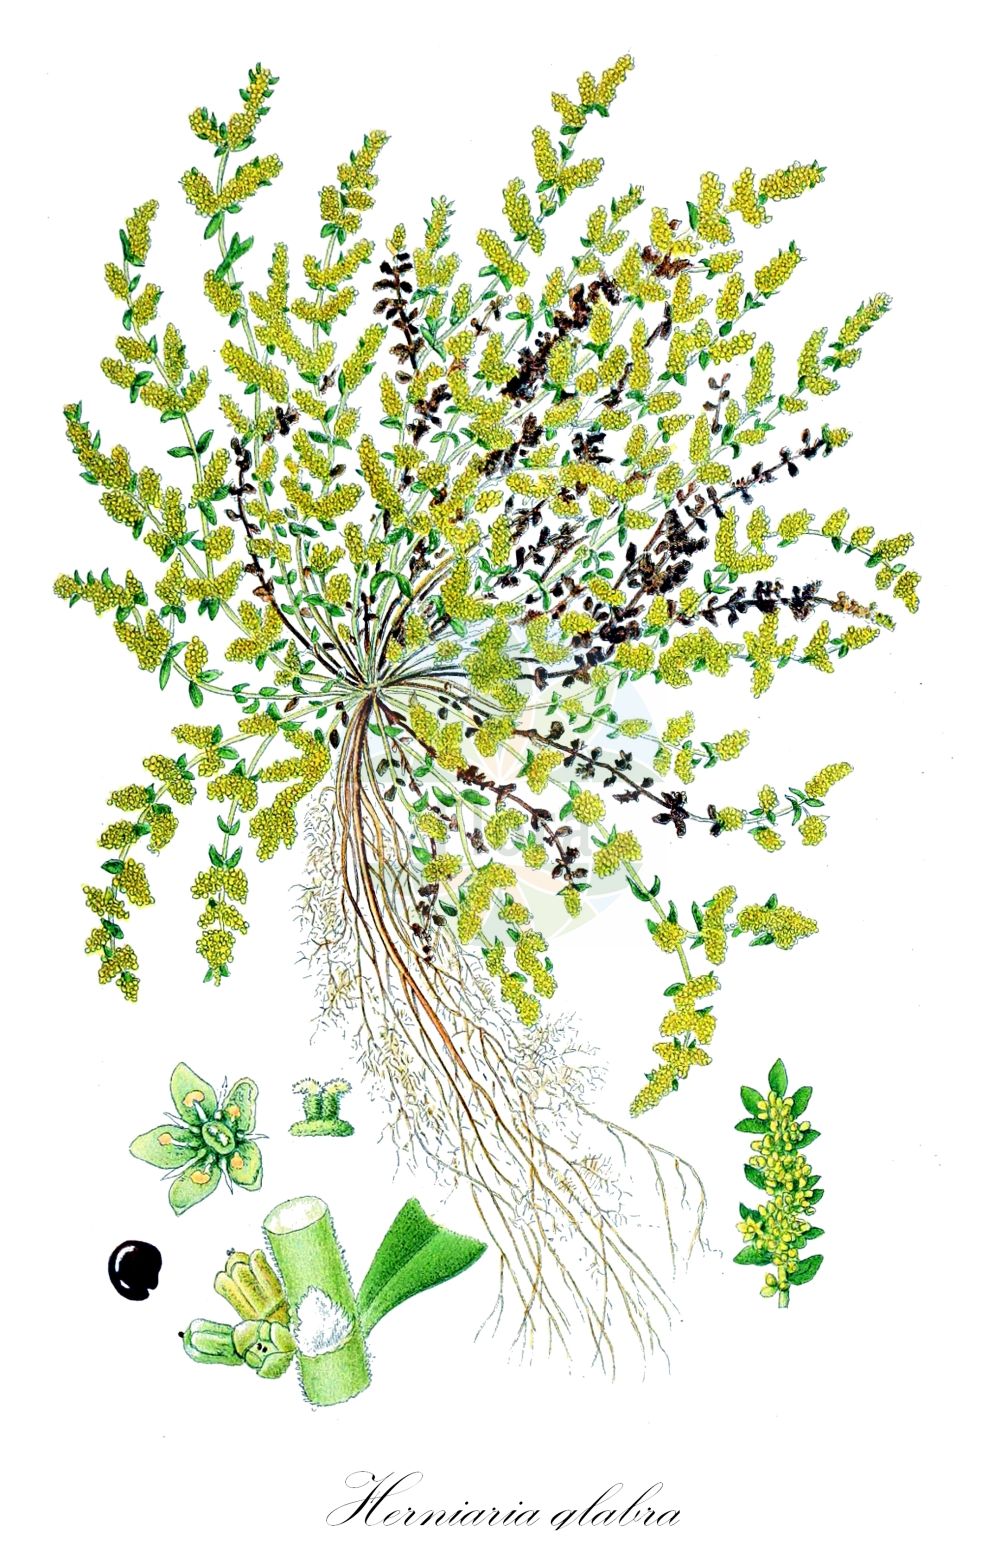 Historische Abbildung von Herniaria glabra (Kahles Bruchkraut - Smooth Rupturewort). Das Bild zeigt Blatt, Bluete, Frucht und Same. ---- Historical Drawing of Herniaria glabra (Kahles Bruchkraut - Smooth Rupturewort). The image is showing leaf, flower, fruit and seed.(Herniaria glabra,Kahles Bruchkraut,Smooth Rupturewort,Herniaria ceretana,Herniaria ceretanica,Herniaria corrigioloides,Herniaria glabra,Herniaria kotovii,Herniaria suavis,Herniaria vulgaris,Kahles Bruchkraut,Smooth Rupturewort,Glabrous Rupturewort,Herniaria,Bruchkraut,Rupturewort,Caryophyllaceae,Nelkengewächse,Pink family,Blatt,Bluete,Frucht,Same,leaf,flower,fruit,seed,Lindman (1901-1905))